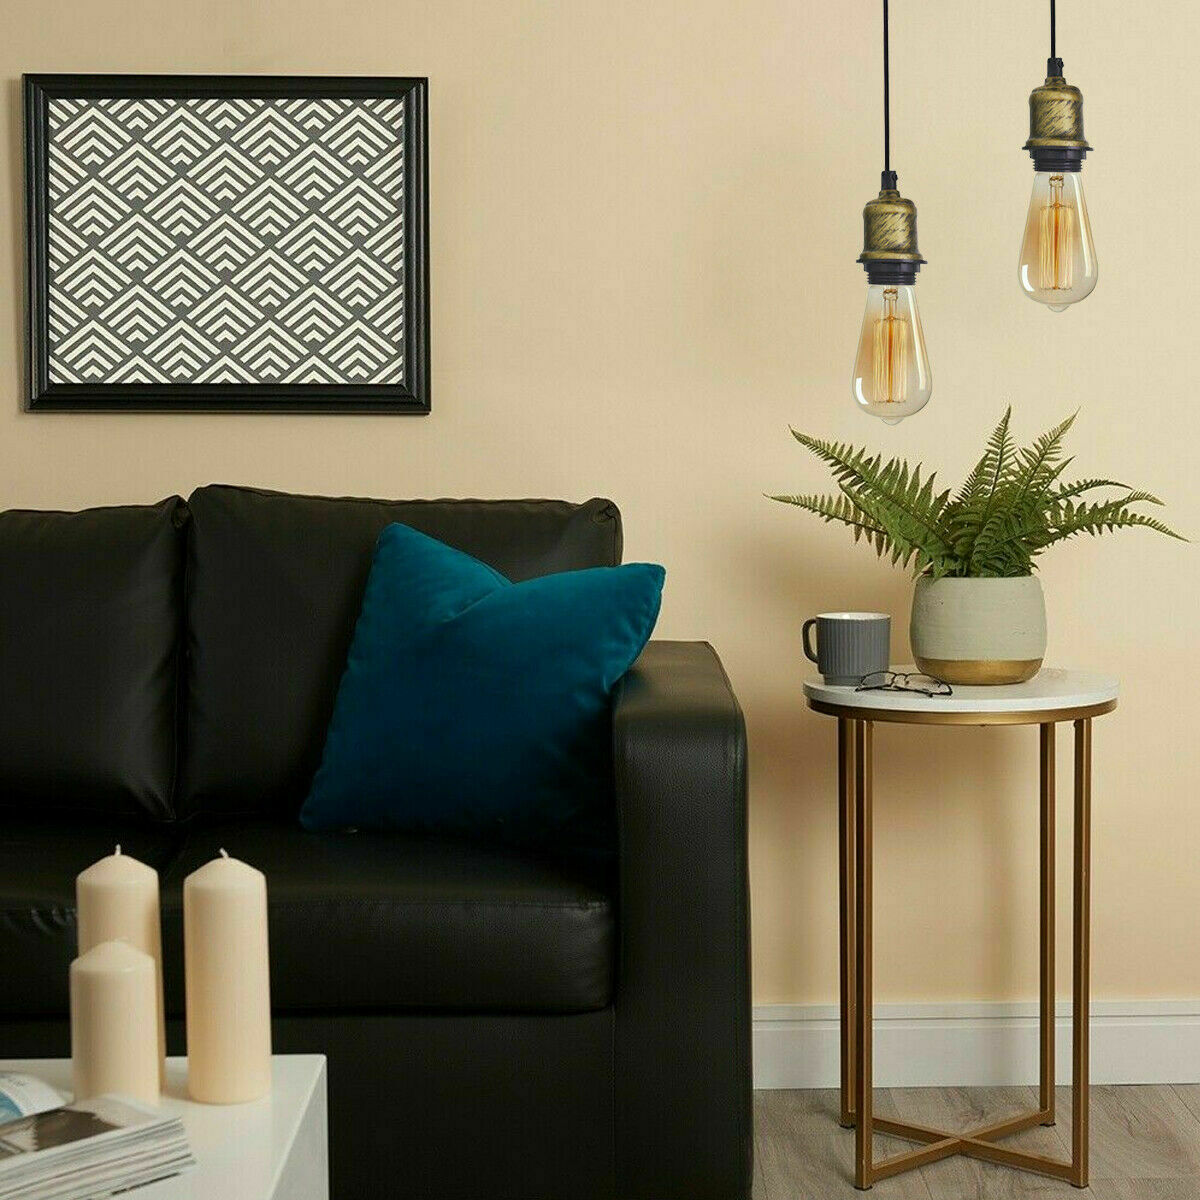 Vintage hanging Pendant light with Socket Lamp Holder